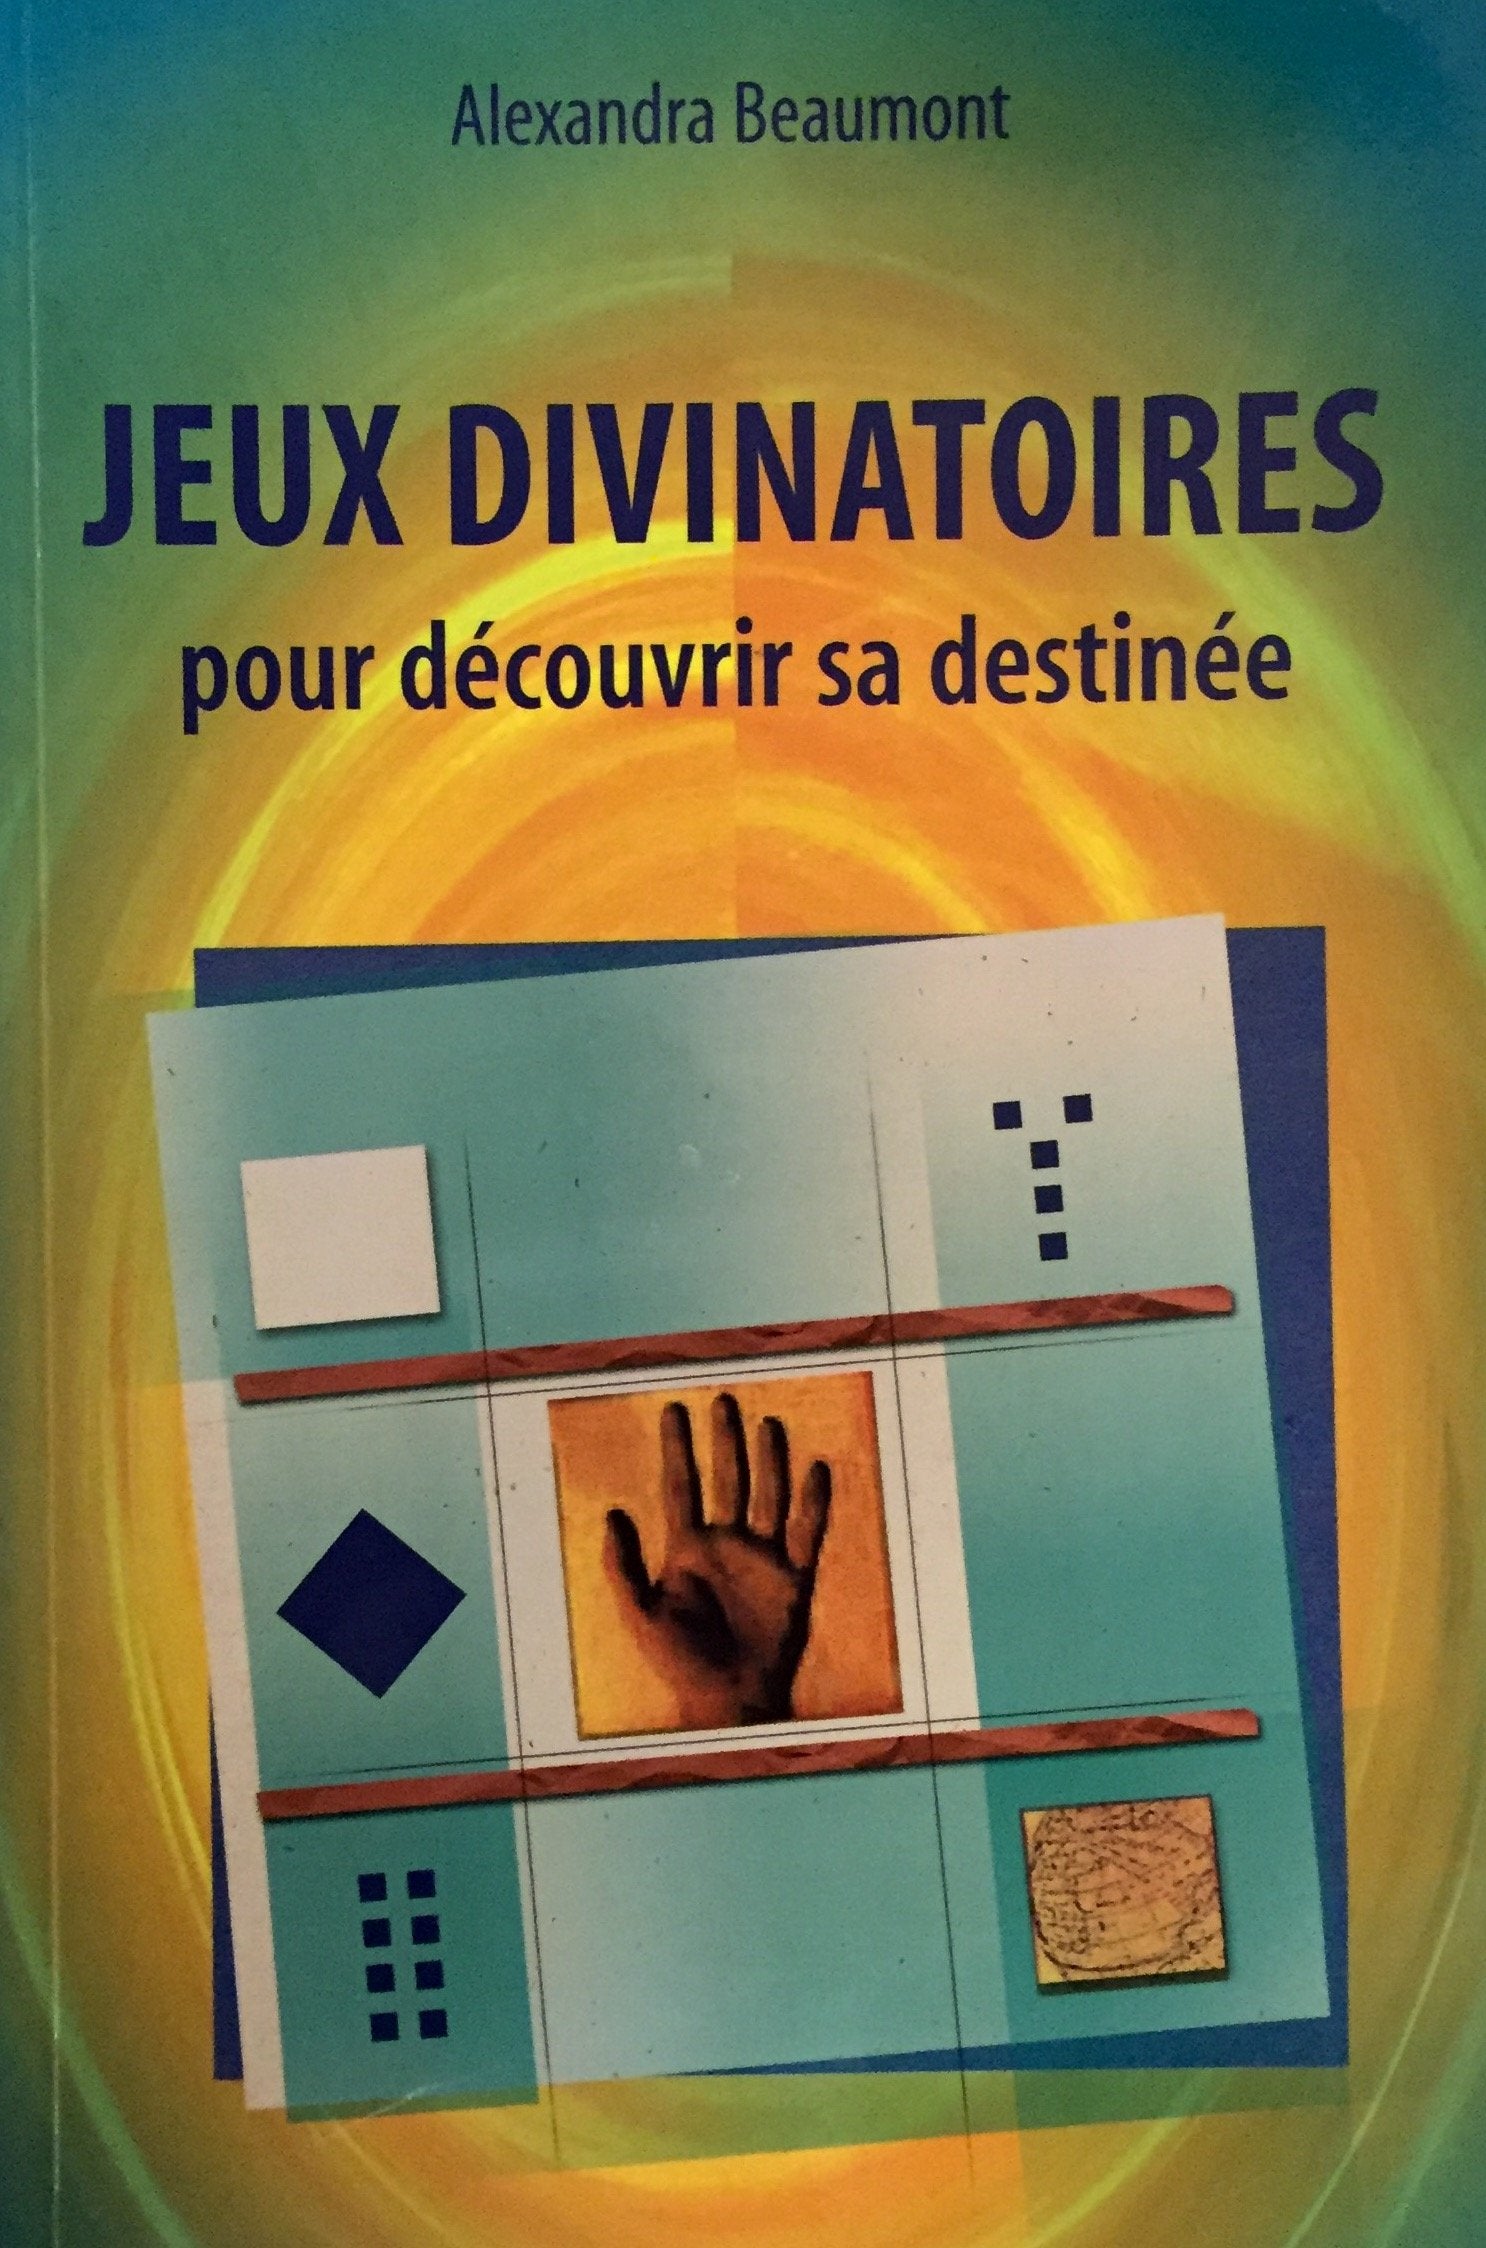 Livre ISBN 2894305354 Jeux divinatoires pour découvrir sa destinée (Alexandra Beaumont)